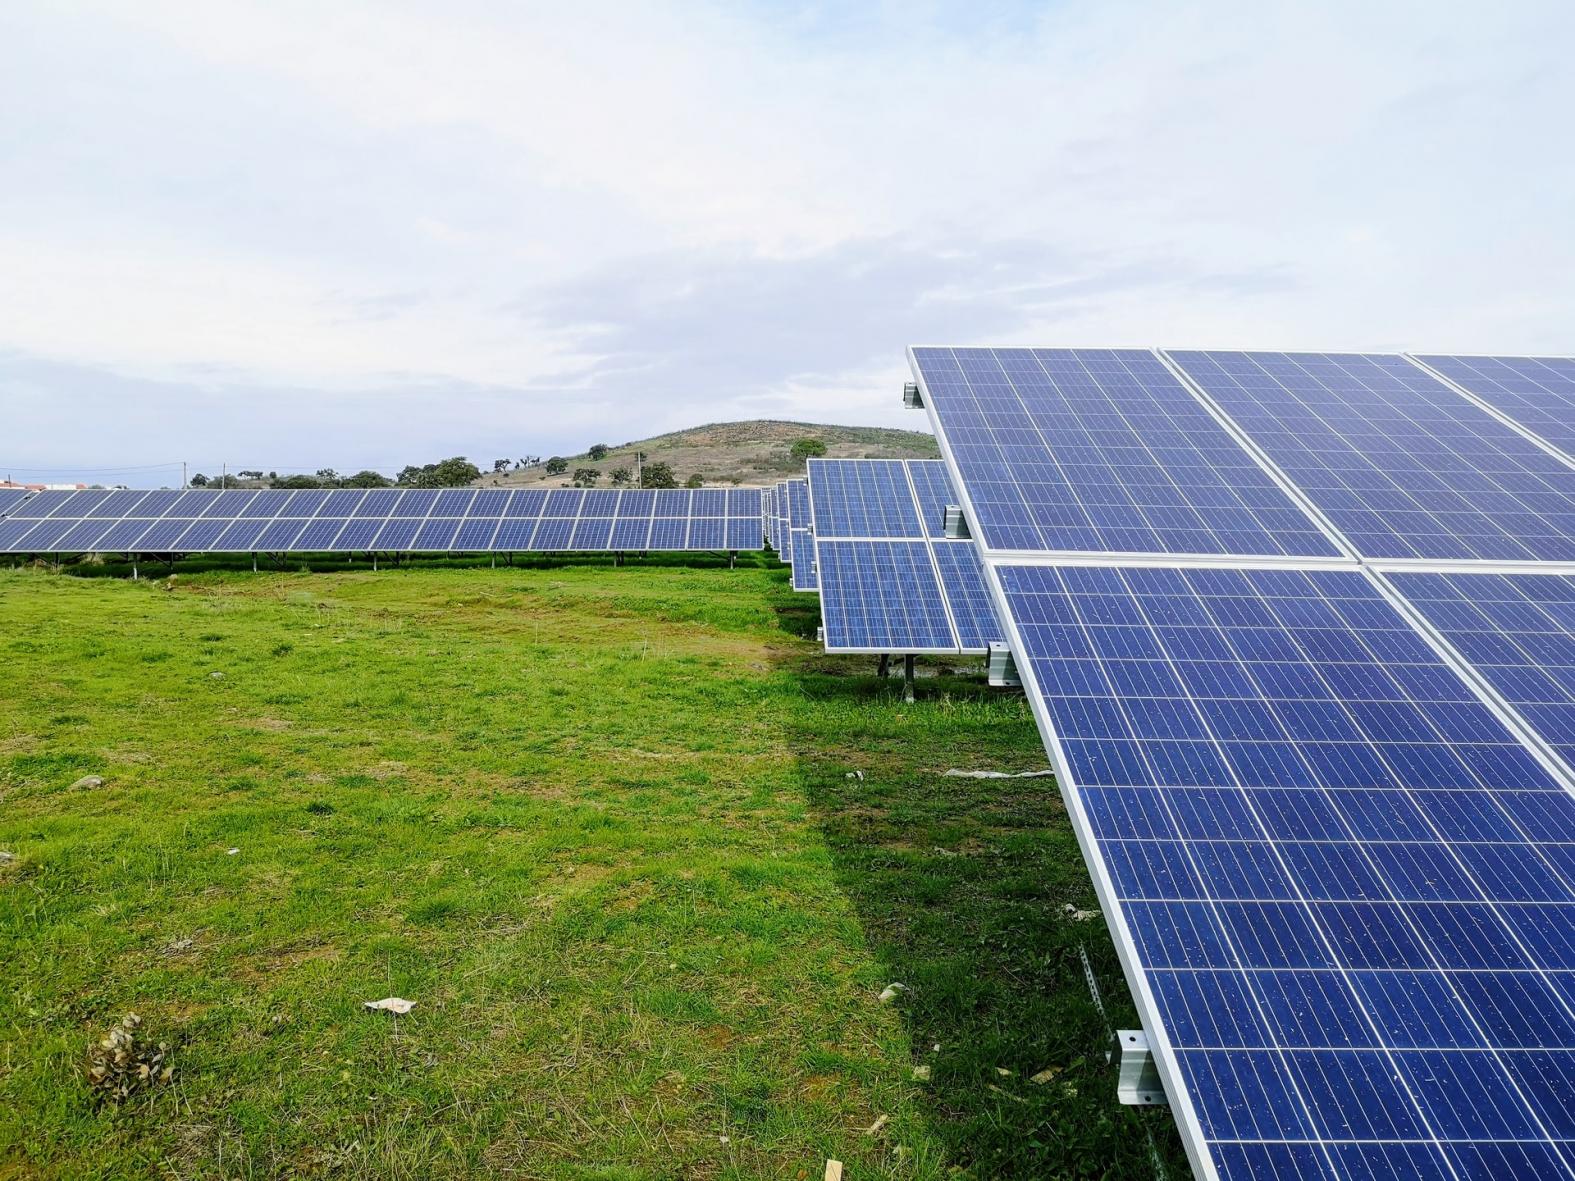 <p>painéis solares</p>“></p>



<p>Painéis solares em Portugal. Empresas podem fazer a transição para fontes renováveis, gerando reduções de emissões significativas e essenciais para um mundo de zero emissões líquidas. (Foto: <a href=